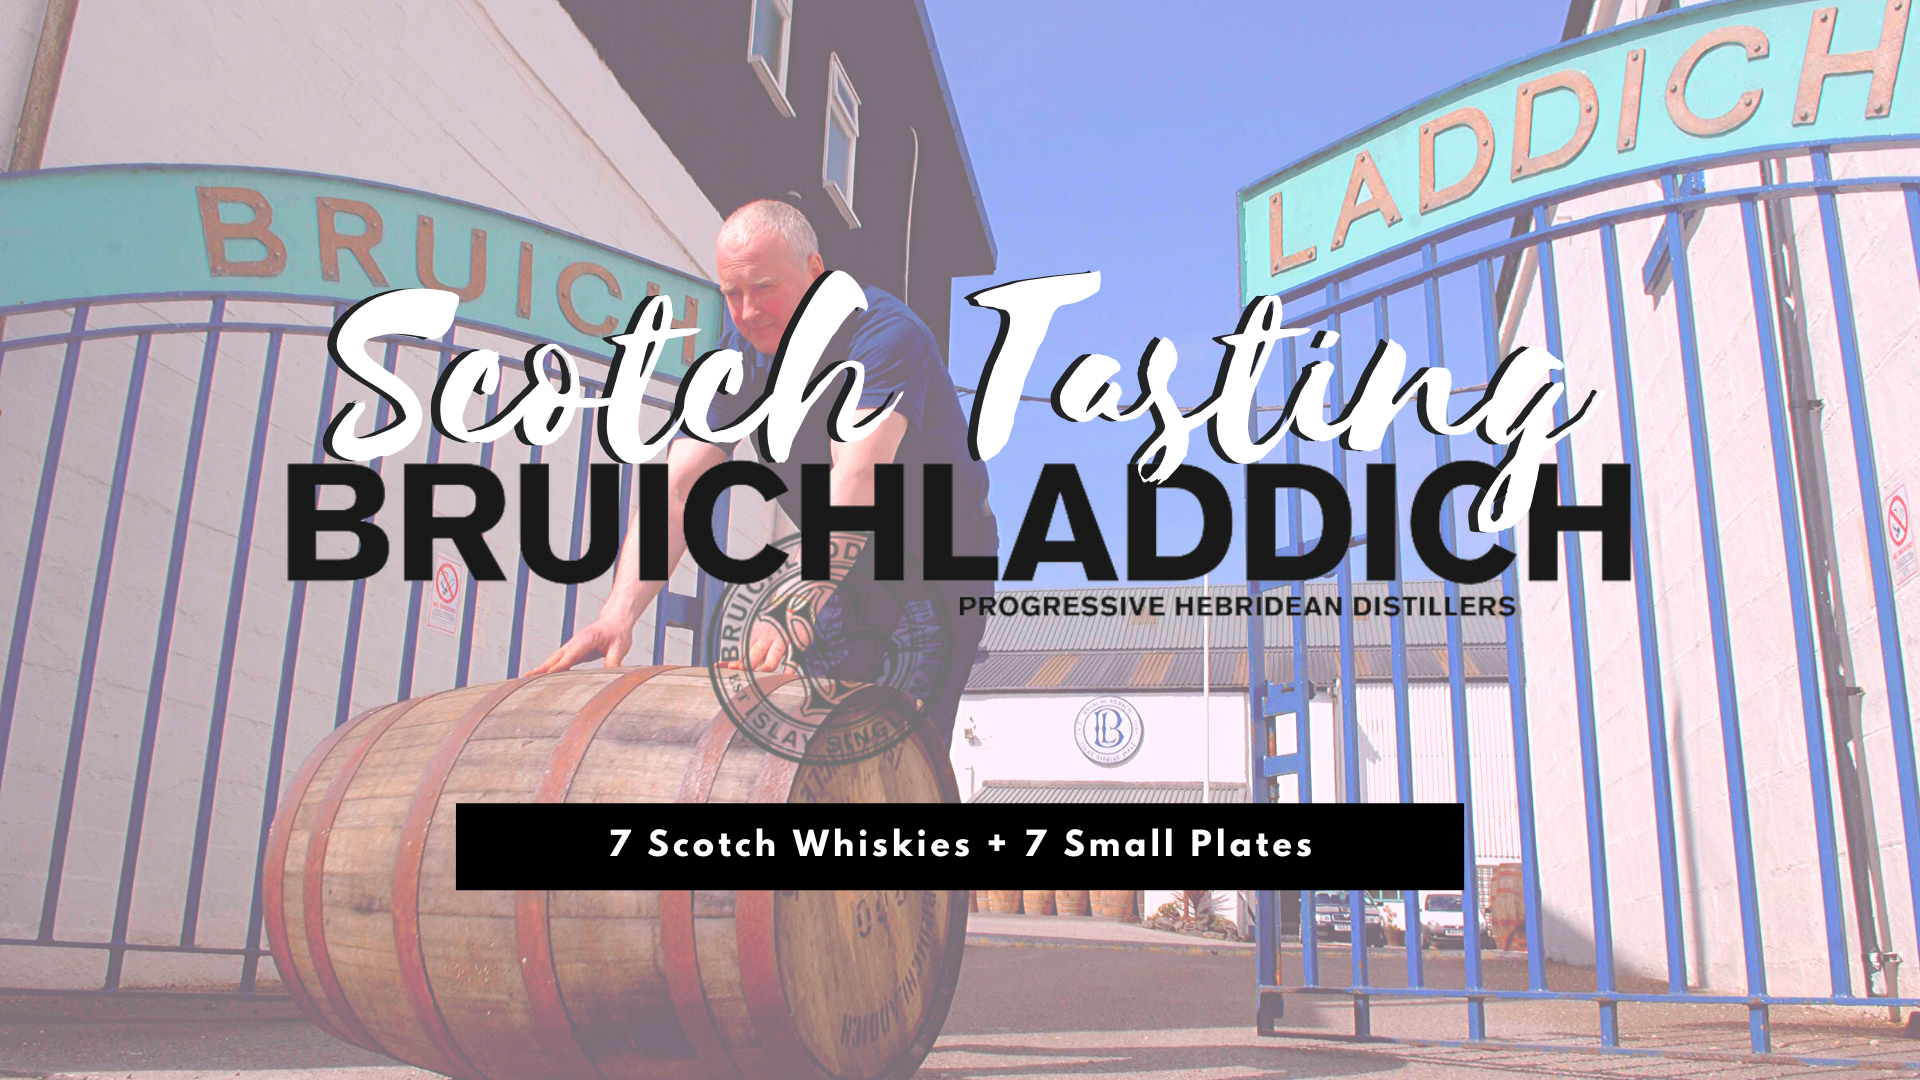 Scotch Tasting: Bruichladdich